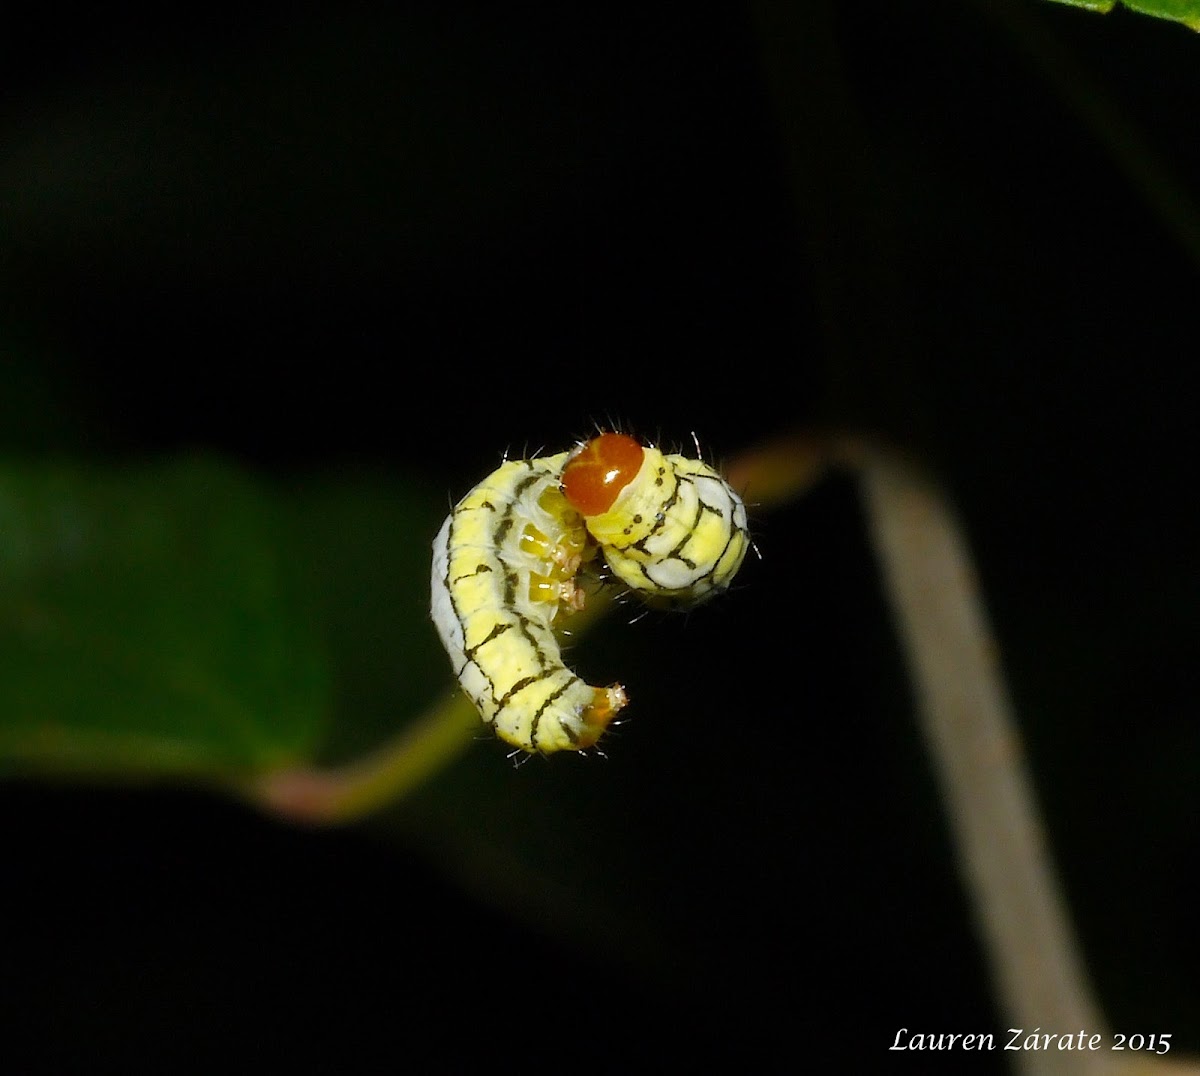 Hanging Caterpillar